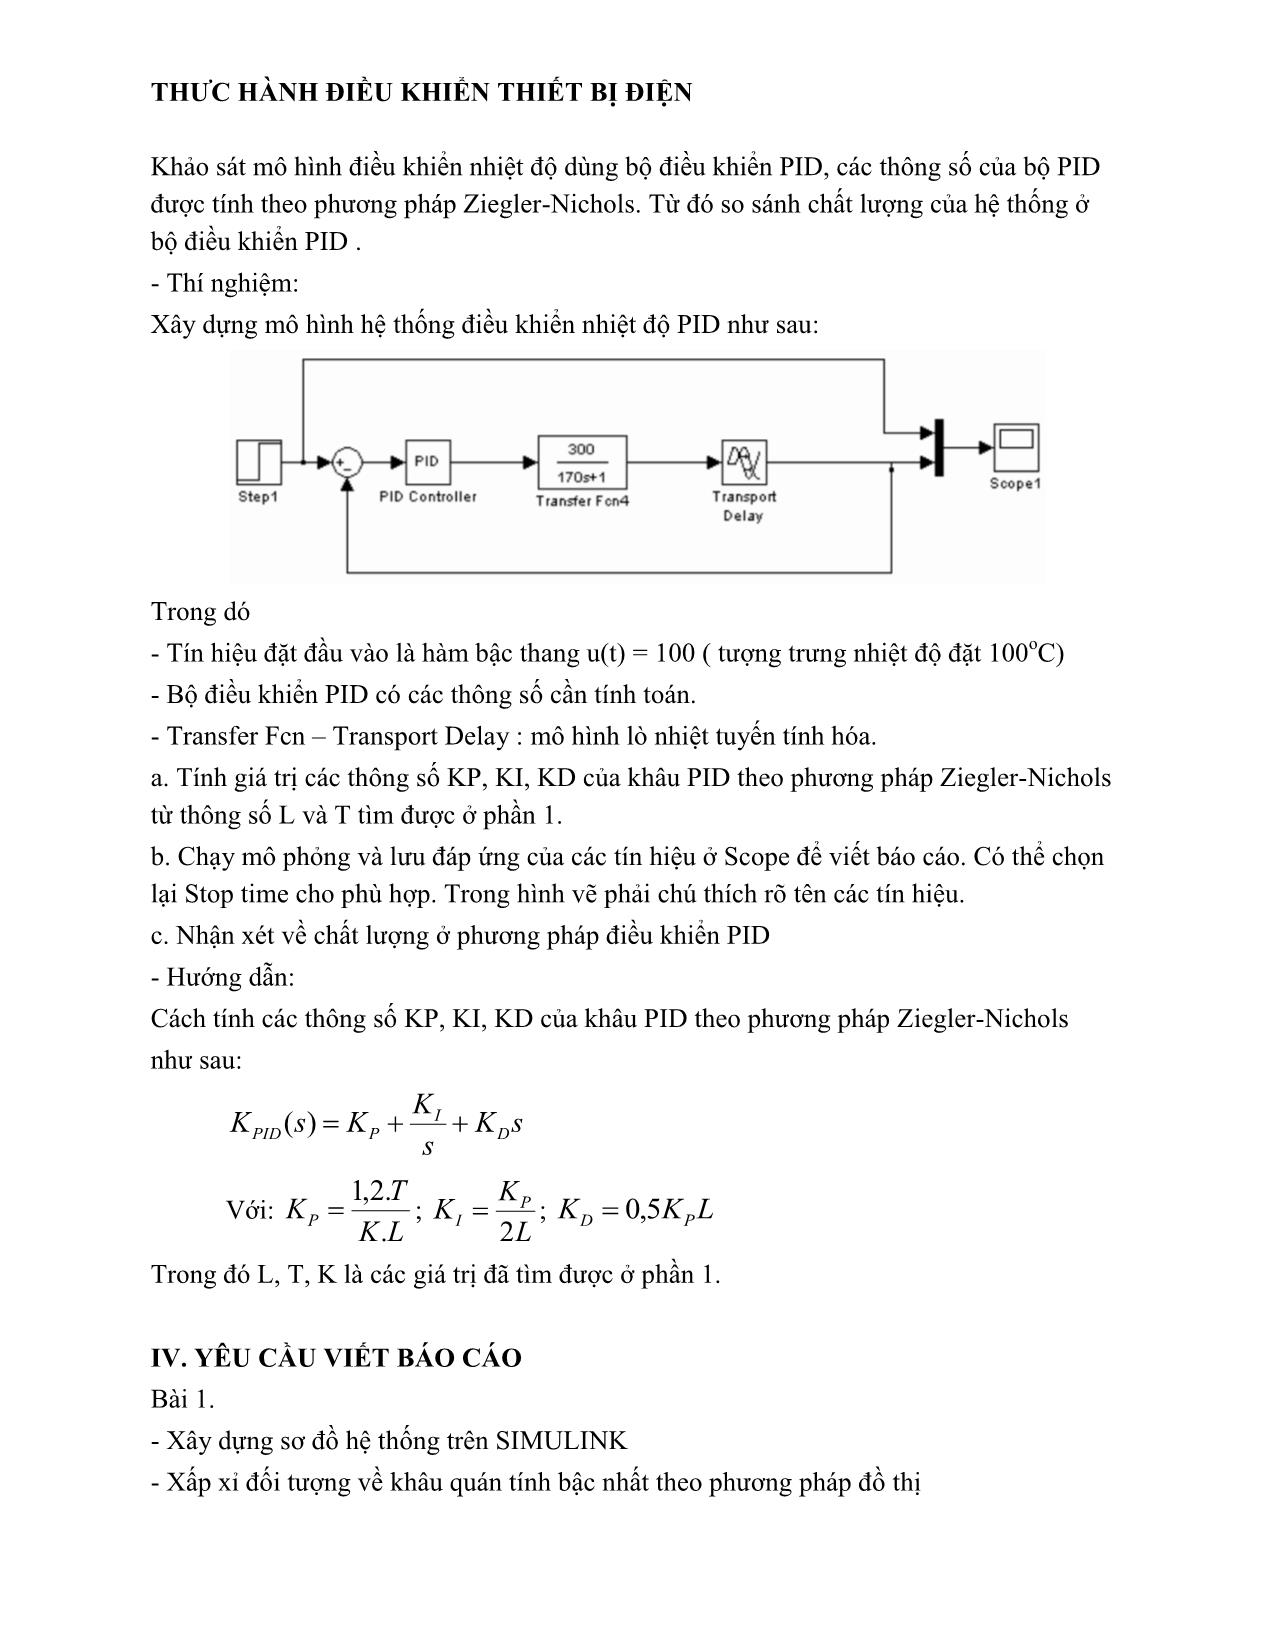 Giáo trình Thực hành điều khiển thiết bị điện - Bài 7: Tổng hợp hệ thống điều khiển tự động trang 7